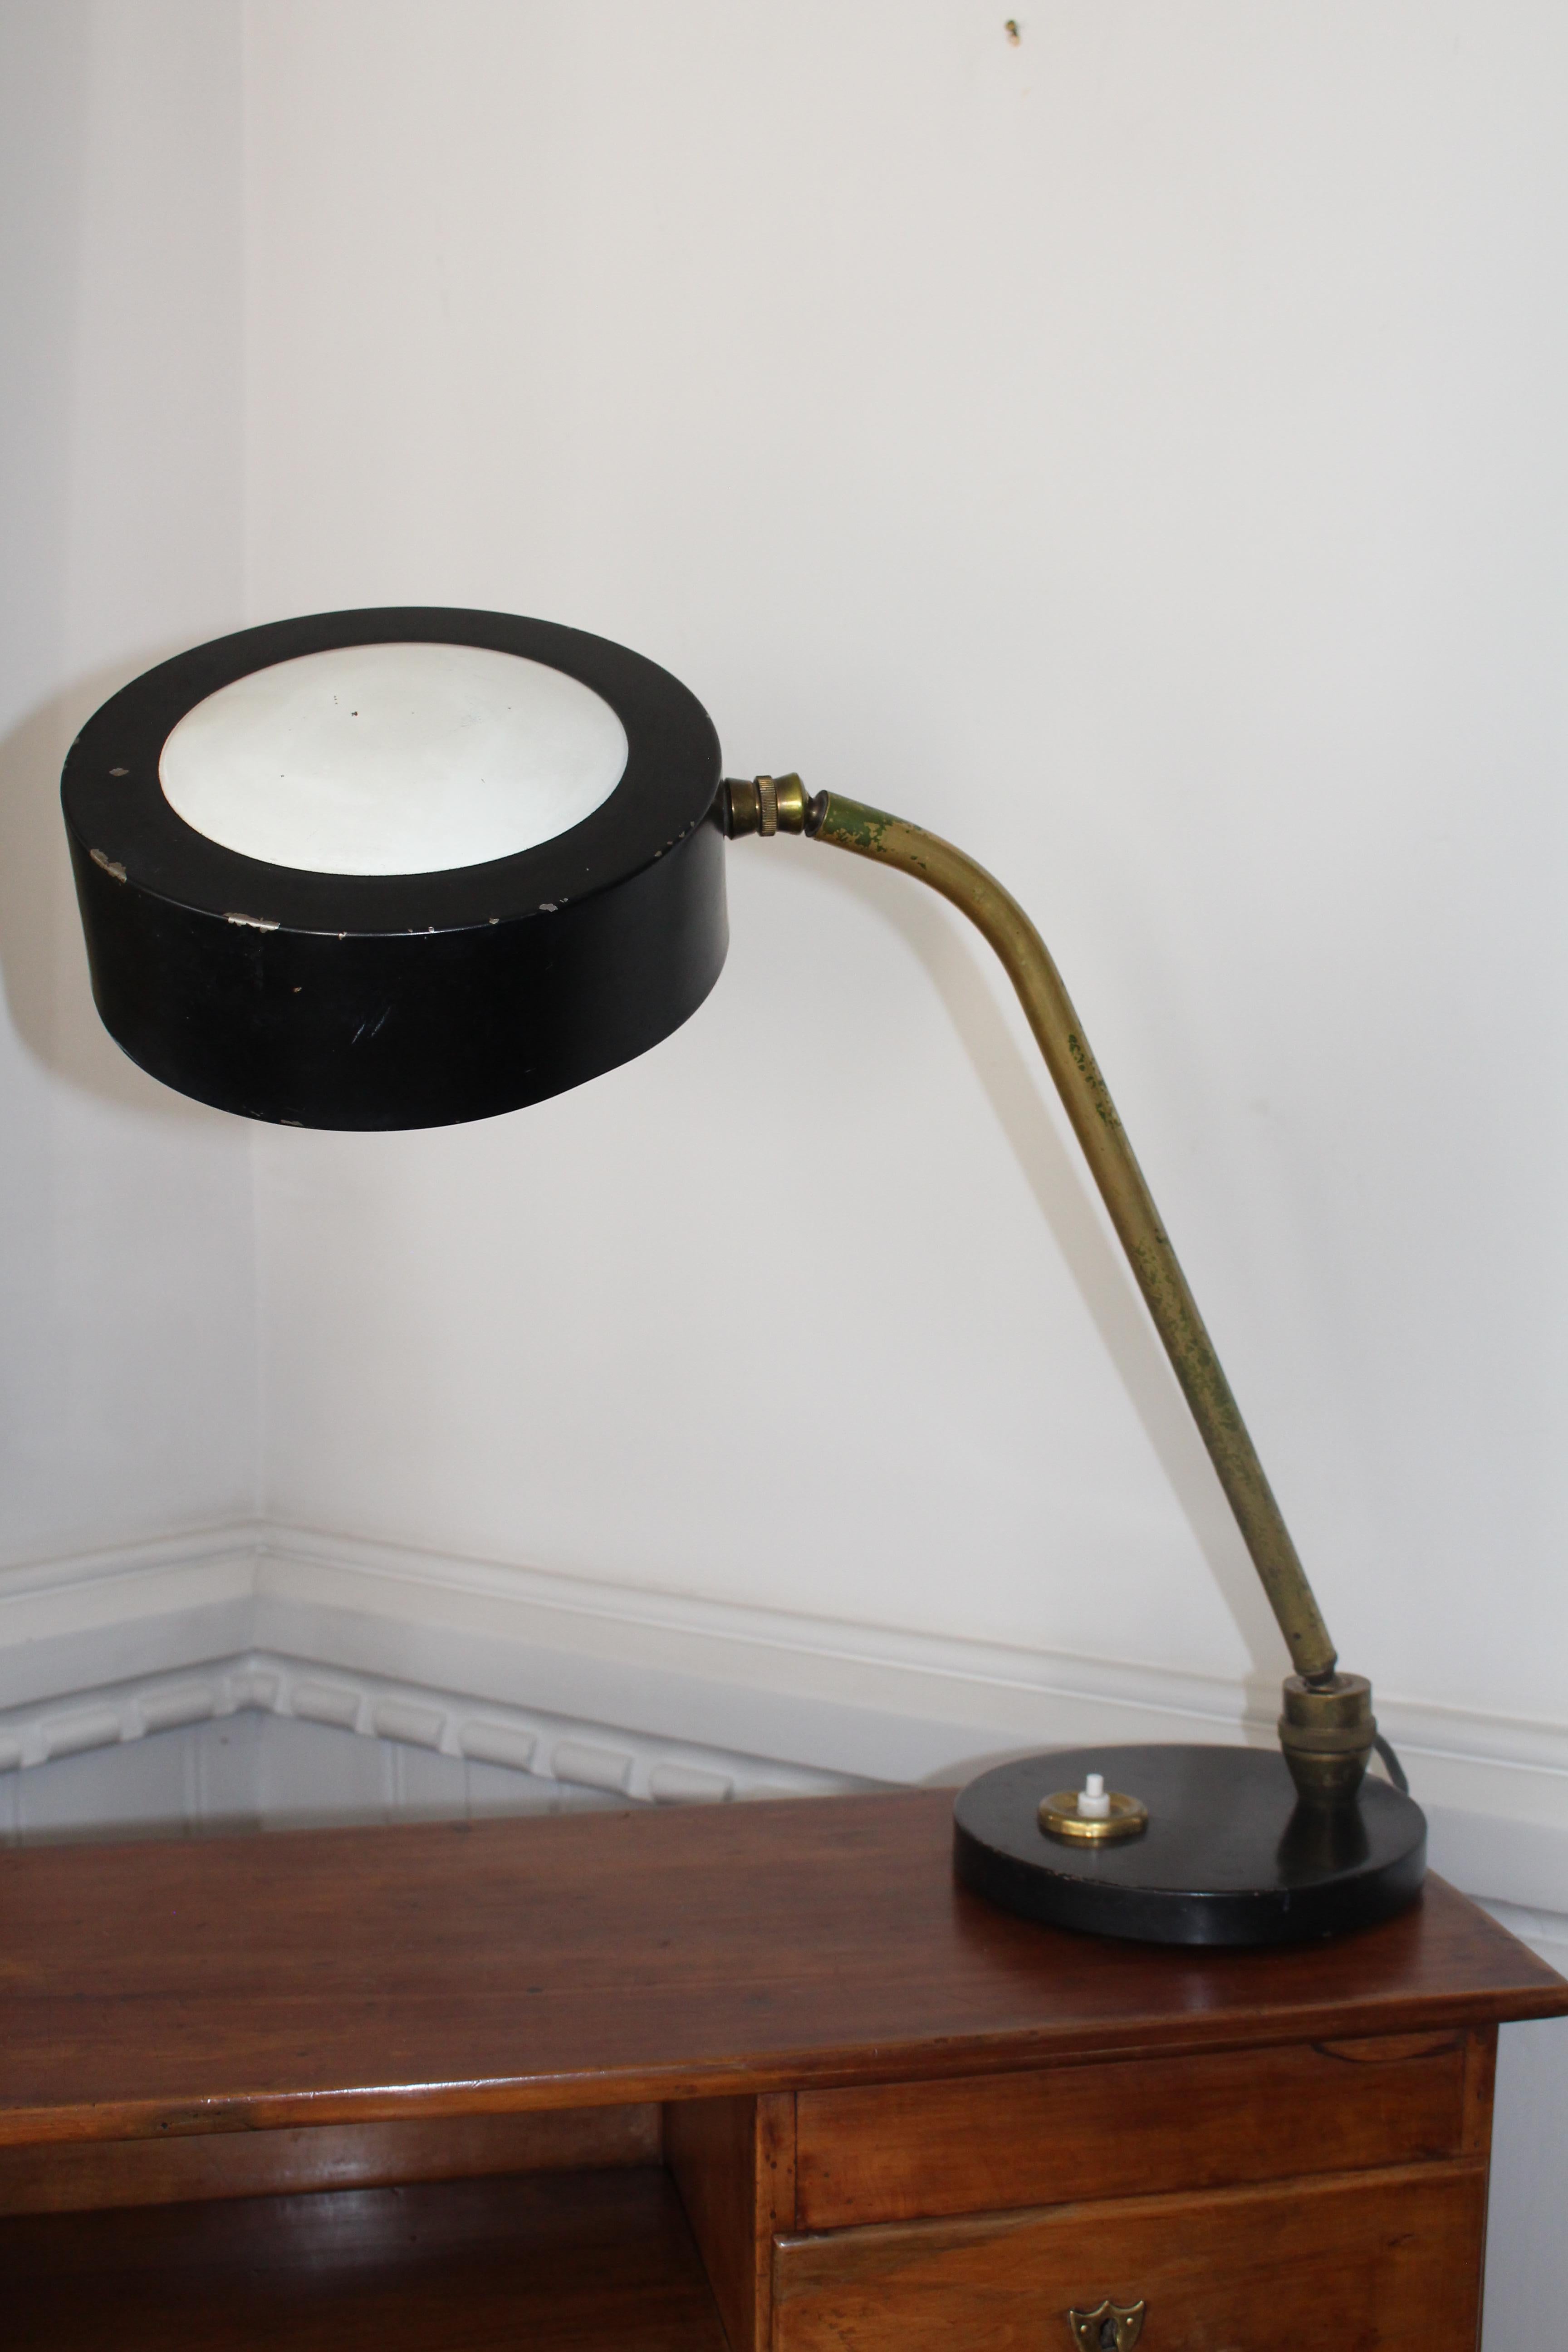 1960 French Brass & Enamel Desk Table Lamp Lighting Jujeau Mounique Maison Jumo 3